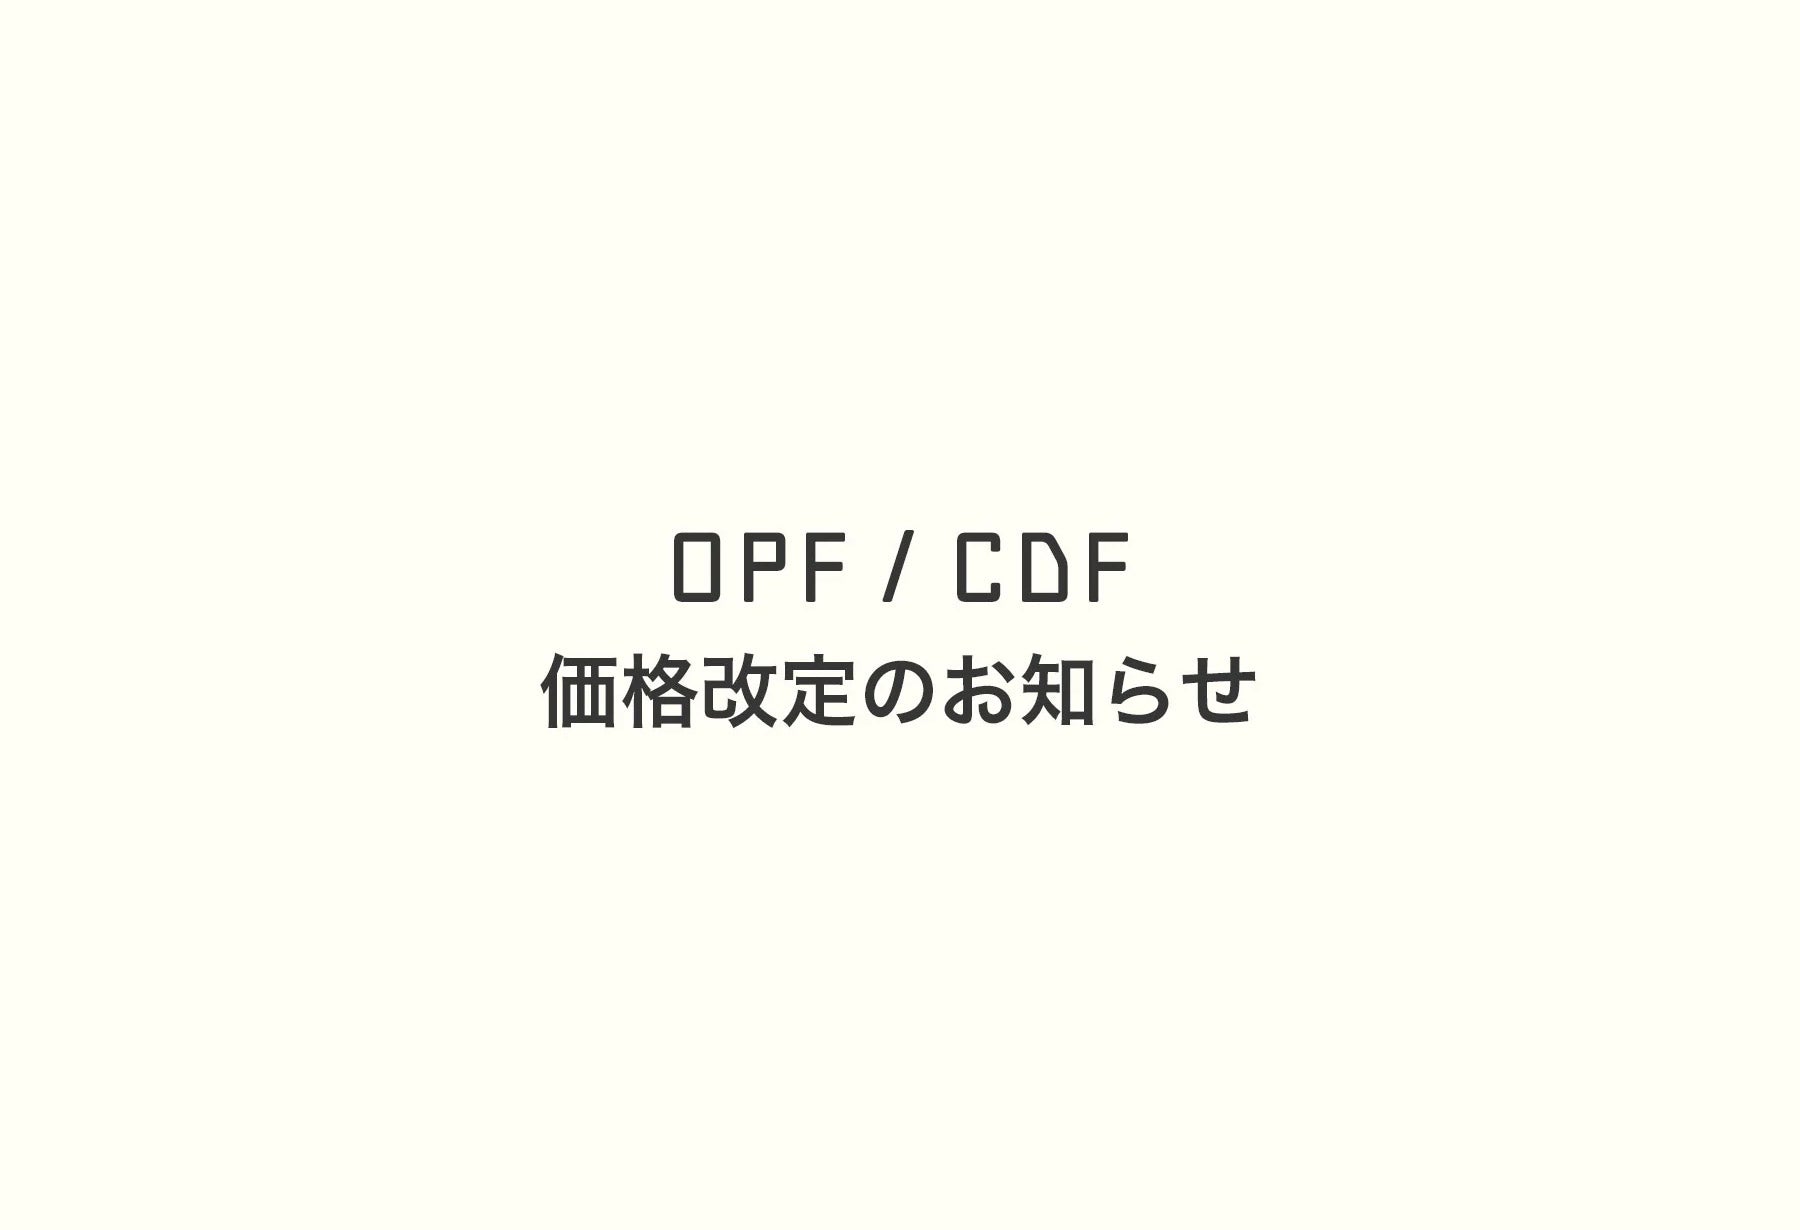 OPF / CDF 価格改定のお知らせ